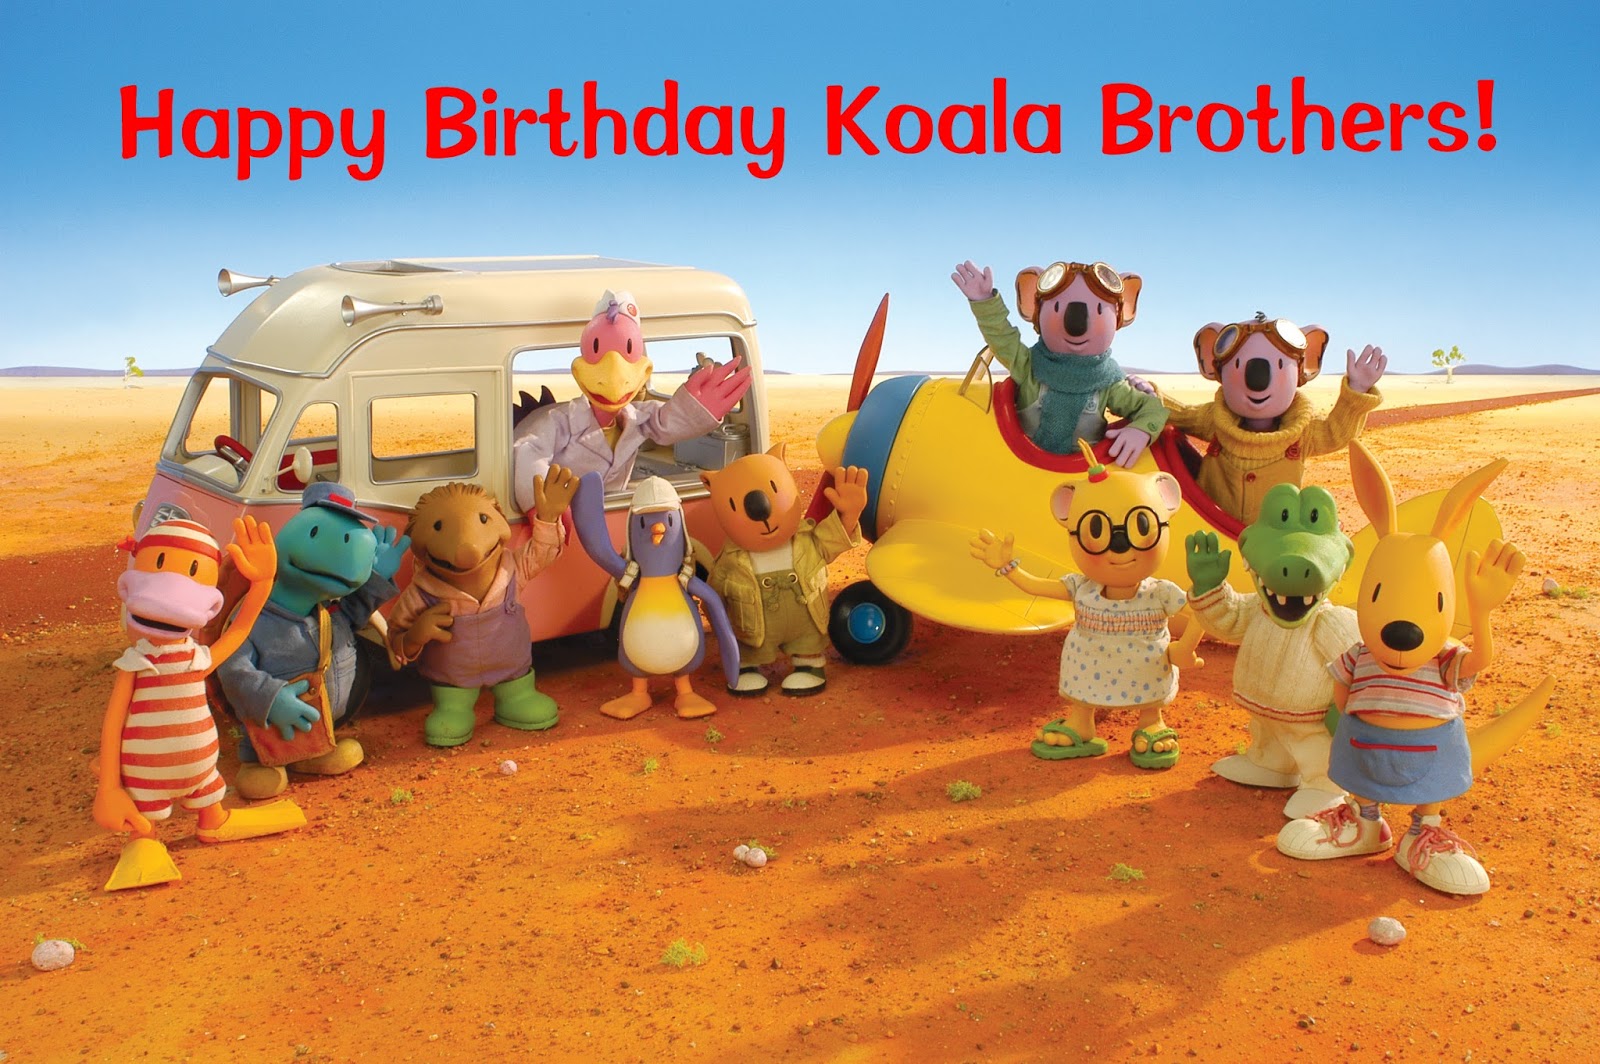 Happy 10th Birthday to the Koala Brothers